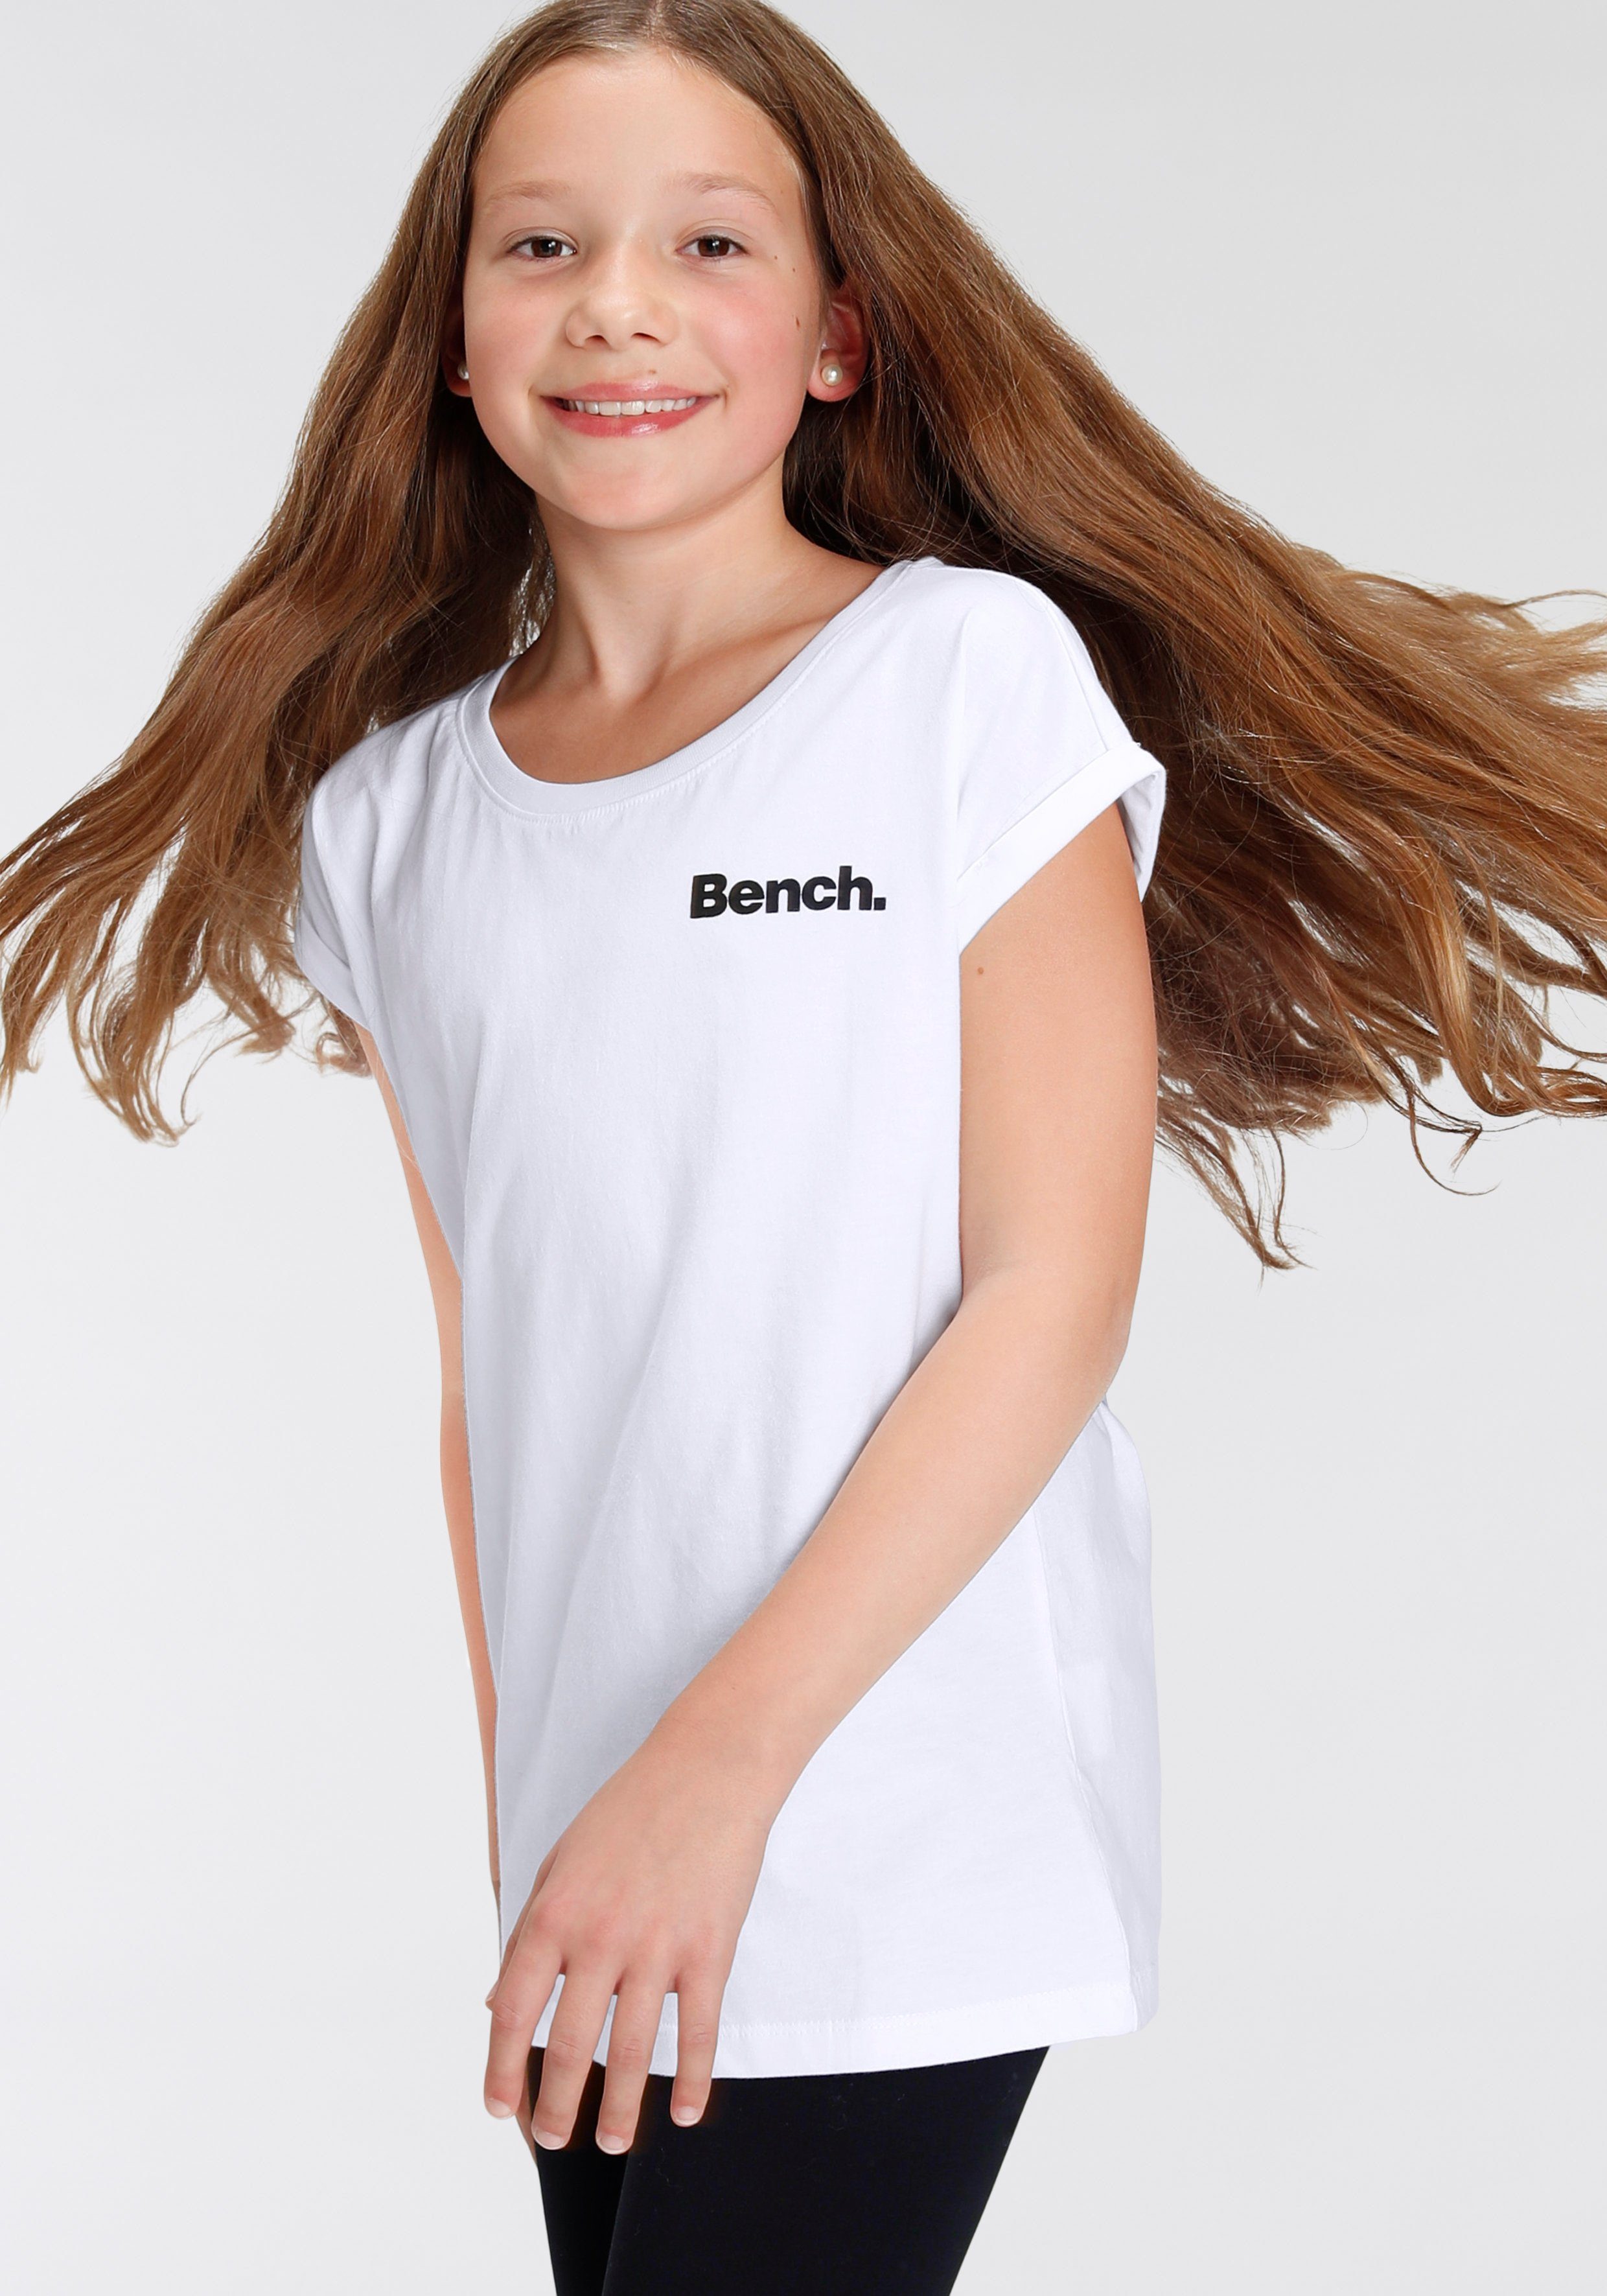 Bench. Fotodruck mit T-Shirt